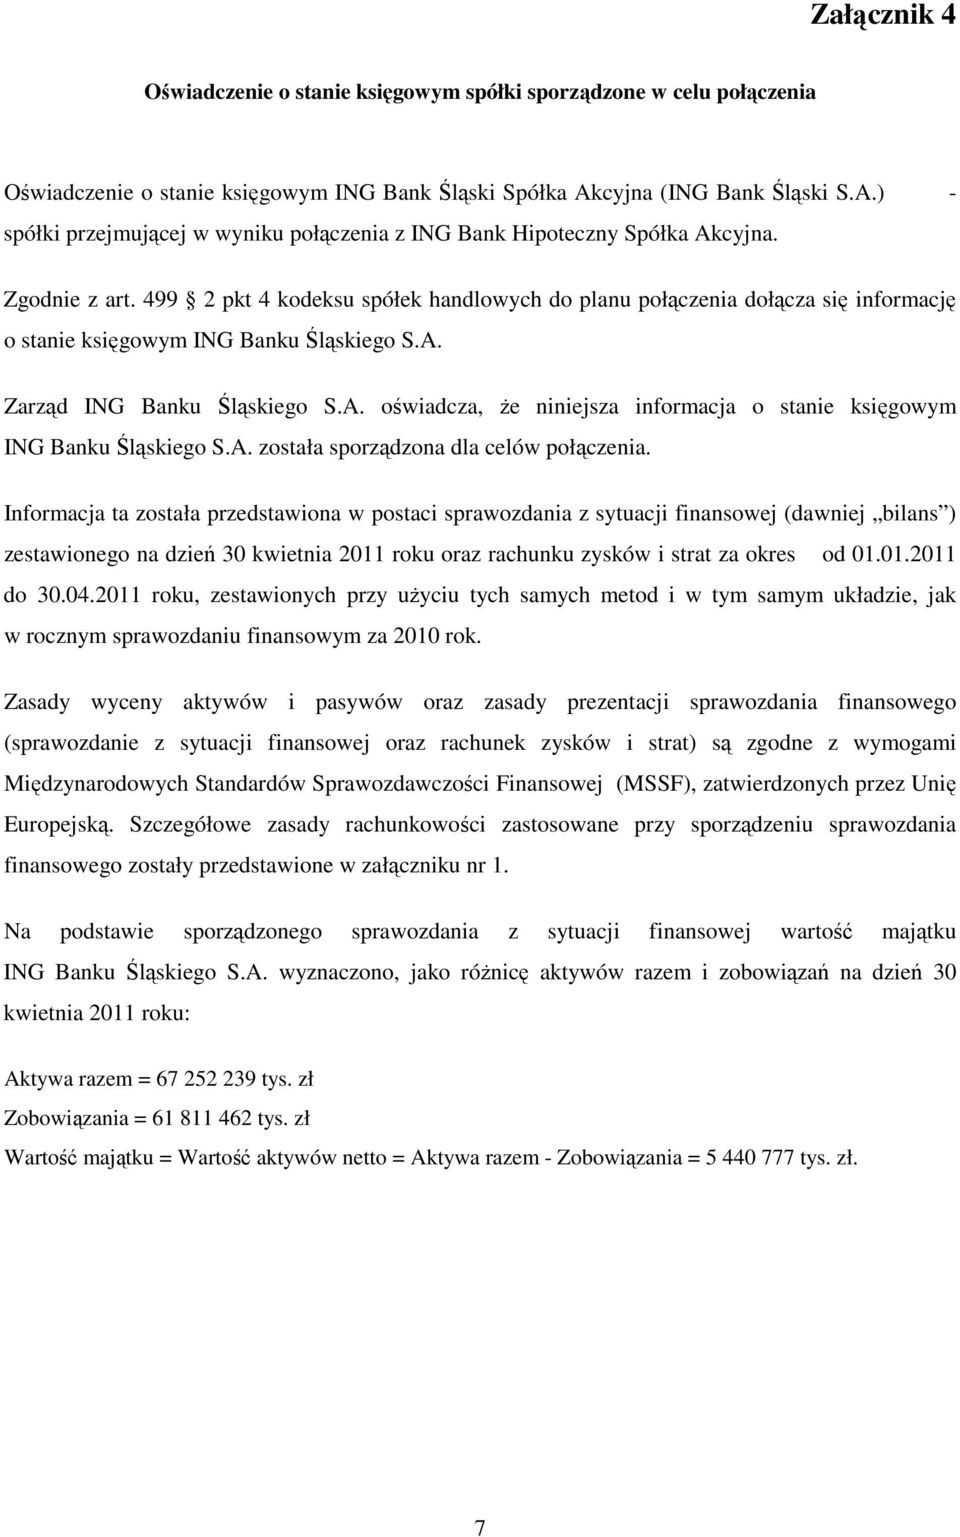 499 2 pkt 4 kodeksu spółek handlowych do planu połączenia dołącza się informację o stanie księgowym ING Banku Śląskiego S.A.